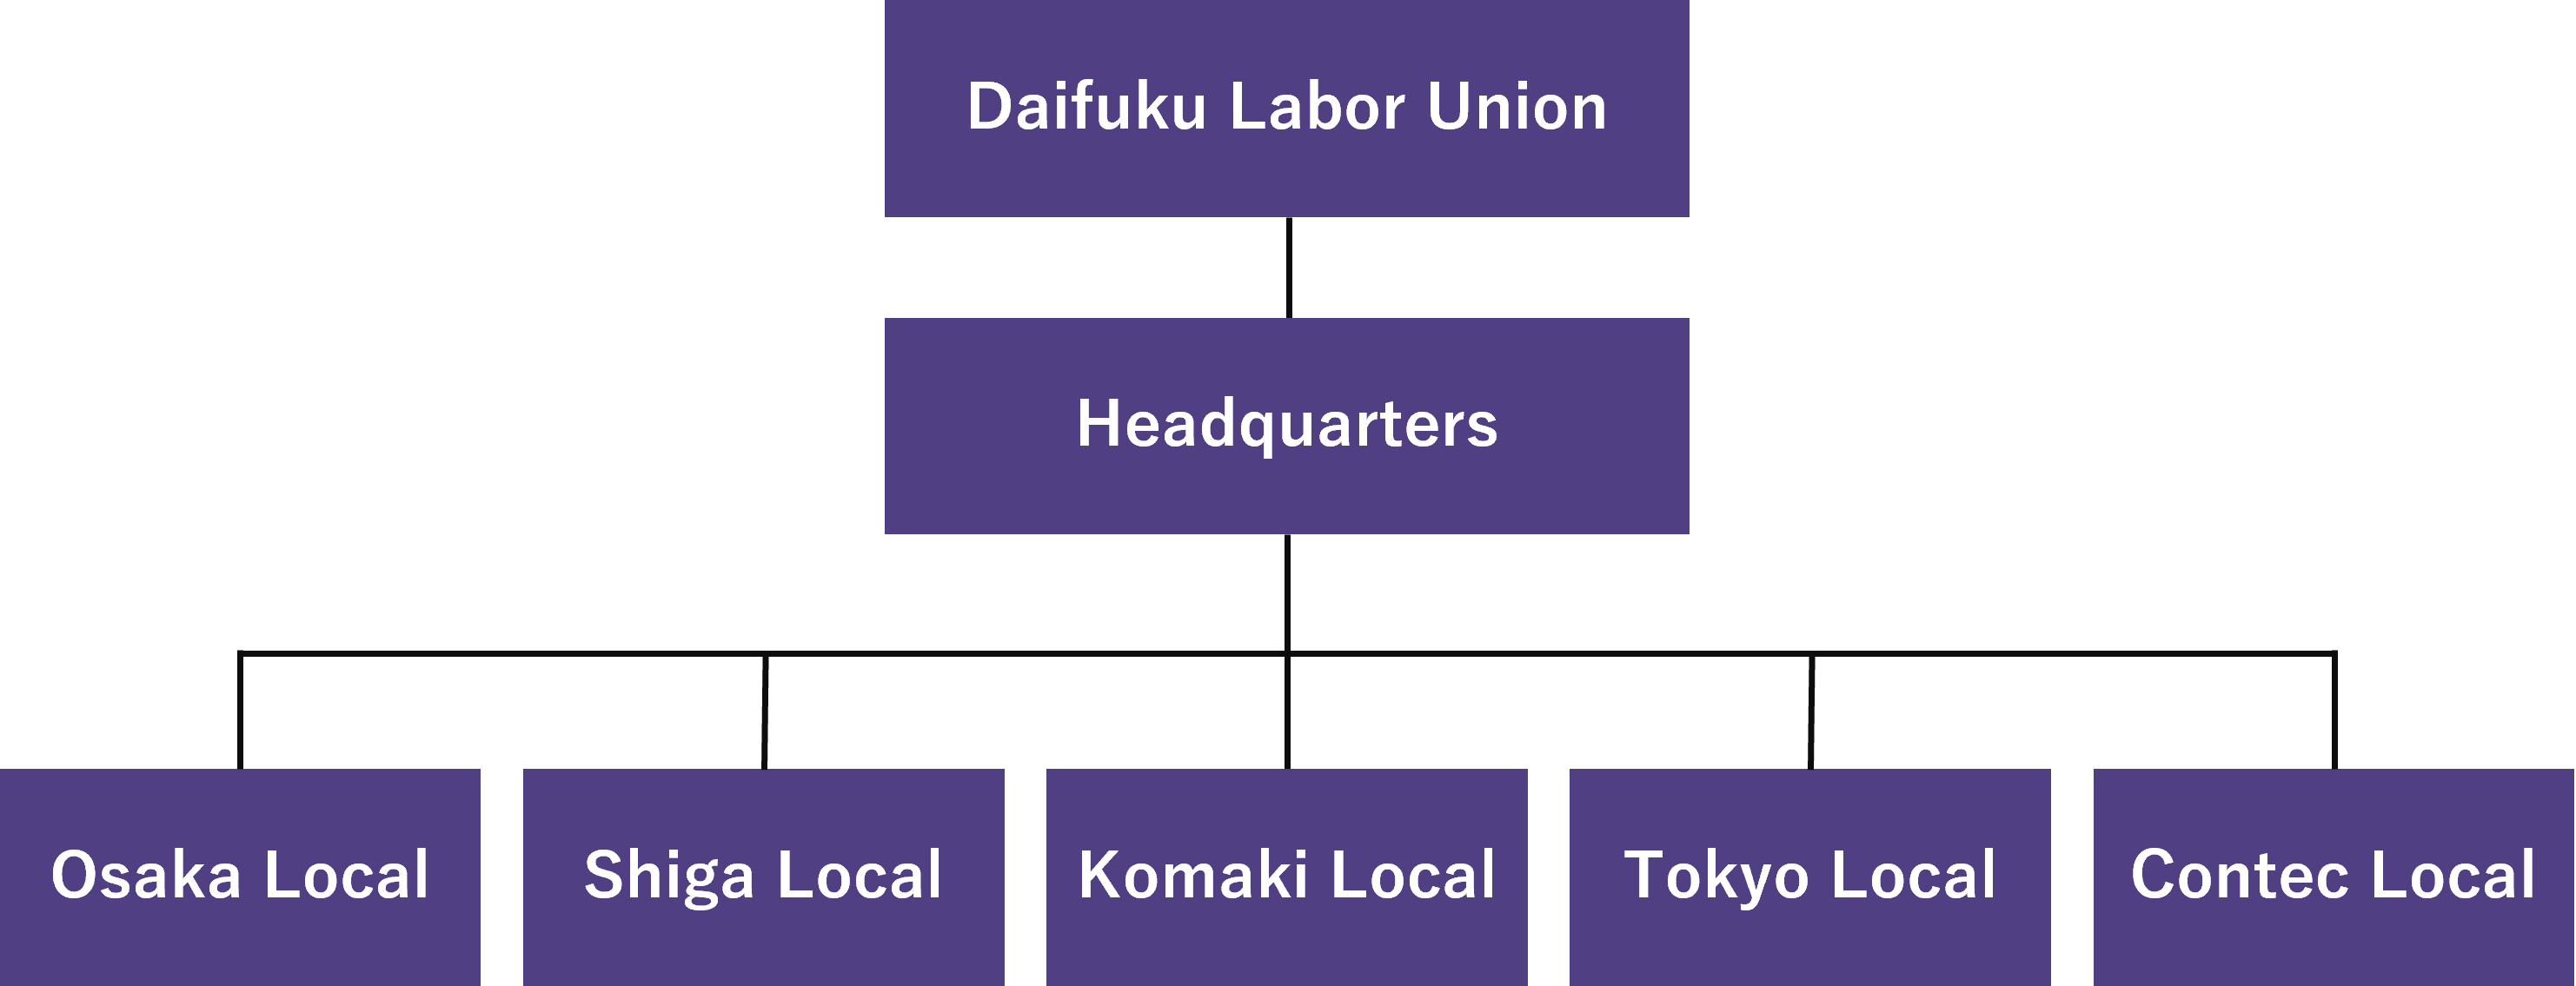 Daifuku Labor Union Organization Chart